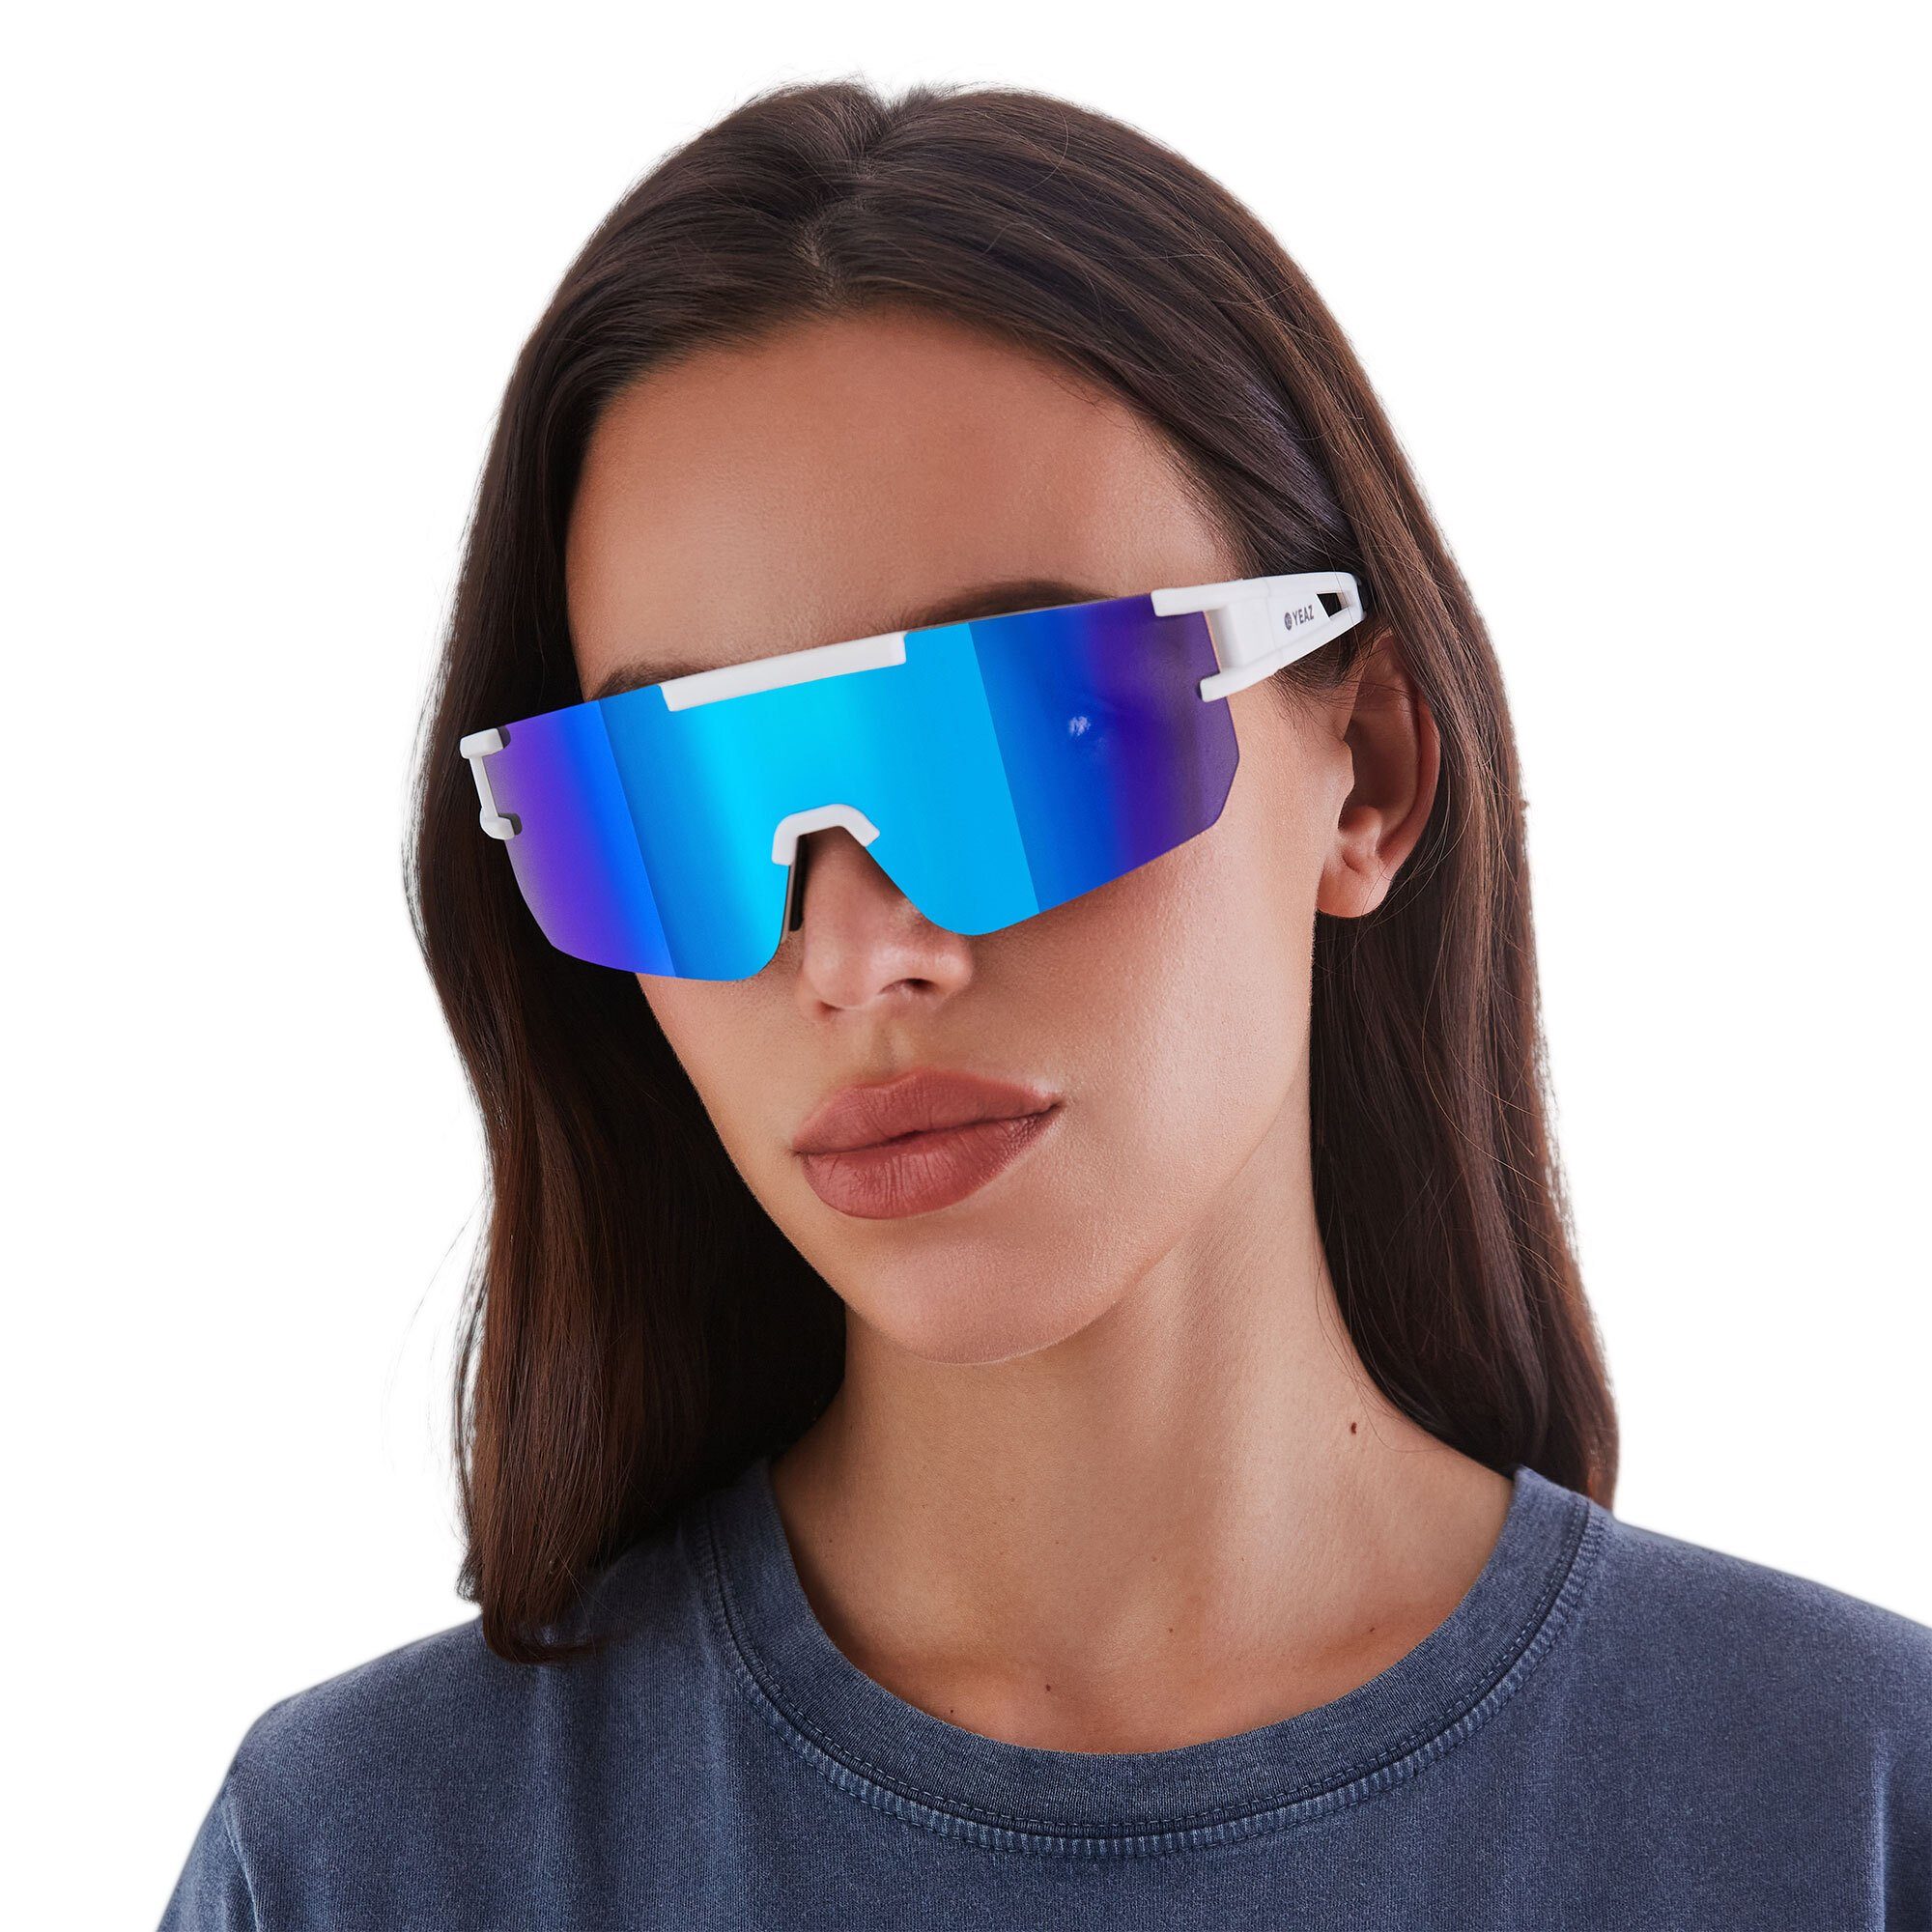 Guter YEAZ Sportbrille bei Schutz Sicht SUNSPARK bright optimierter sport-sonnenbrille white/blue,